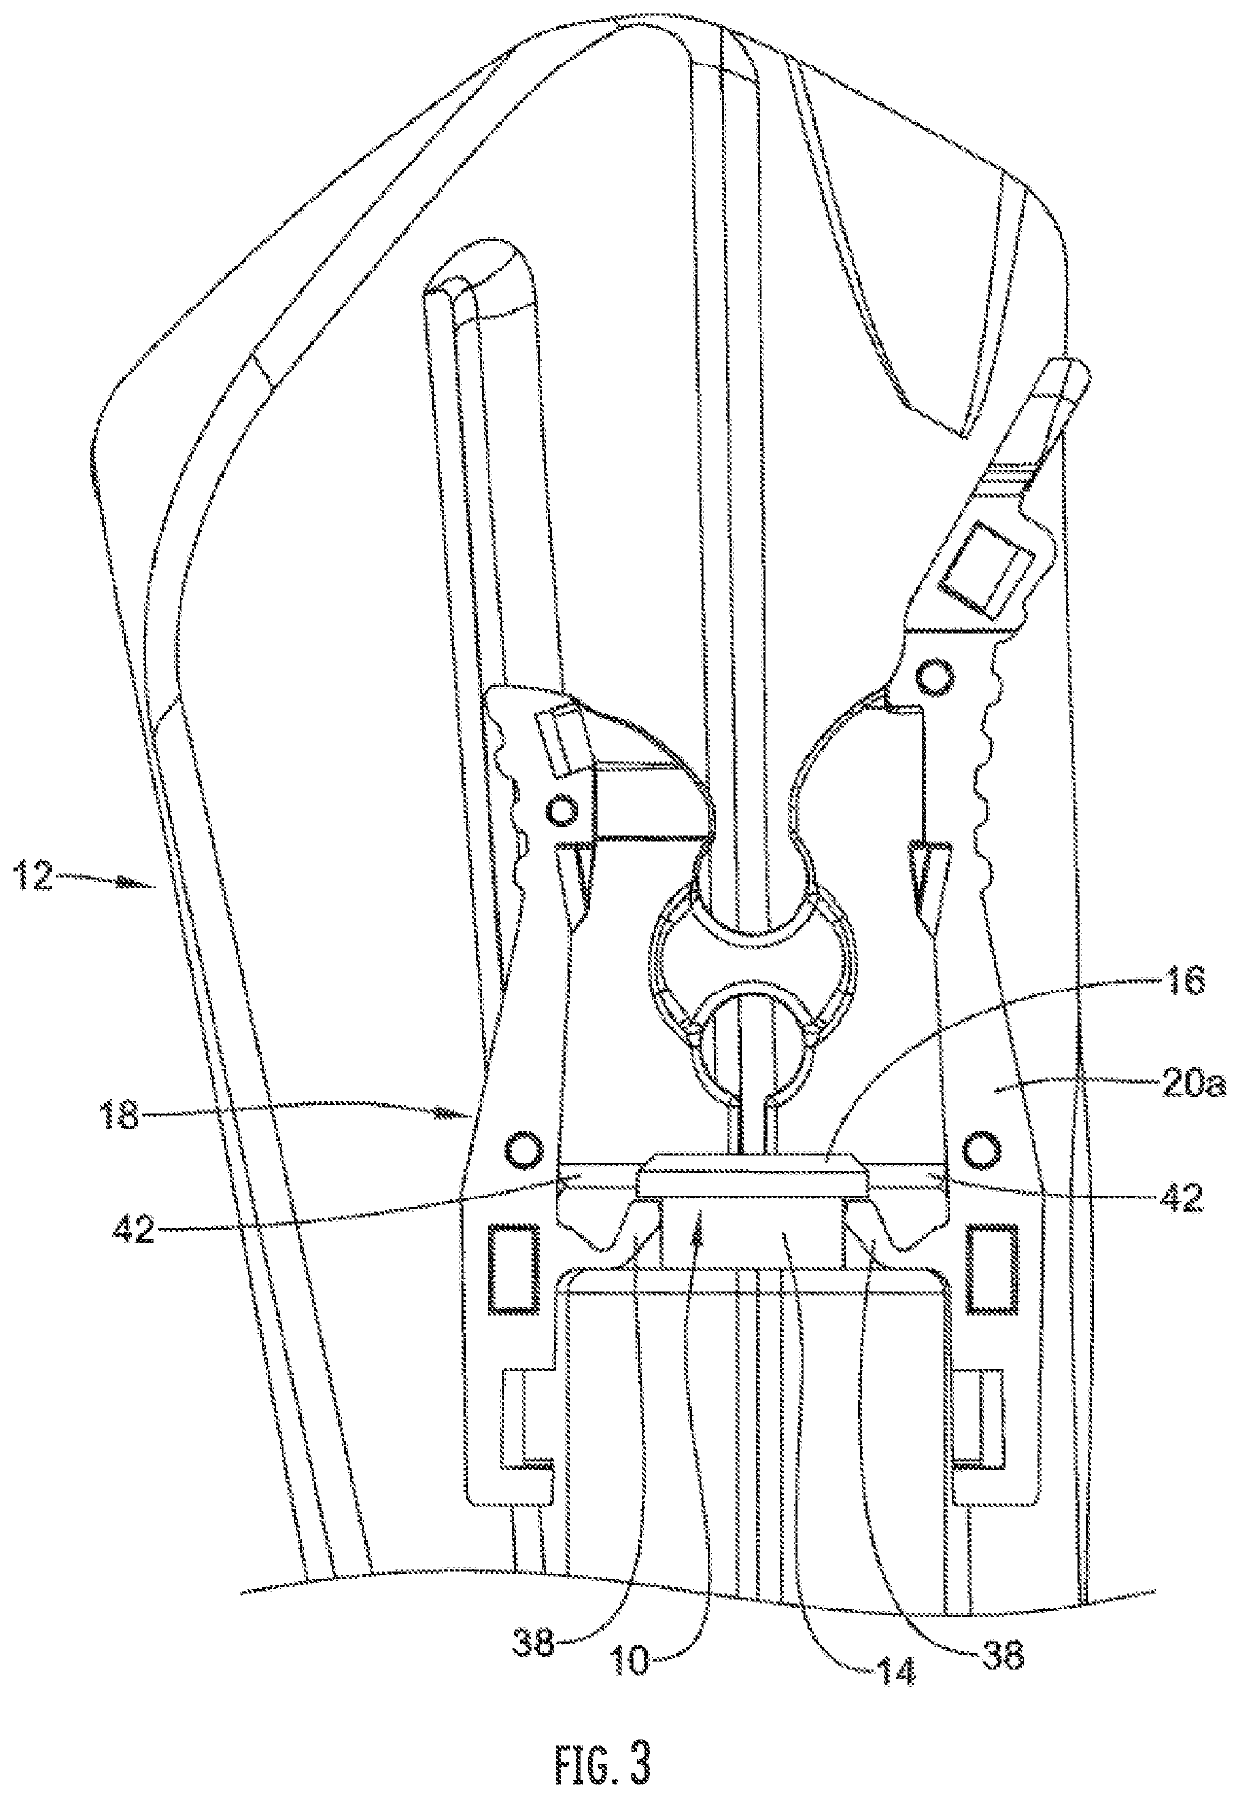 Attachments for endoscopes